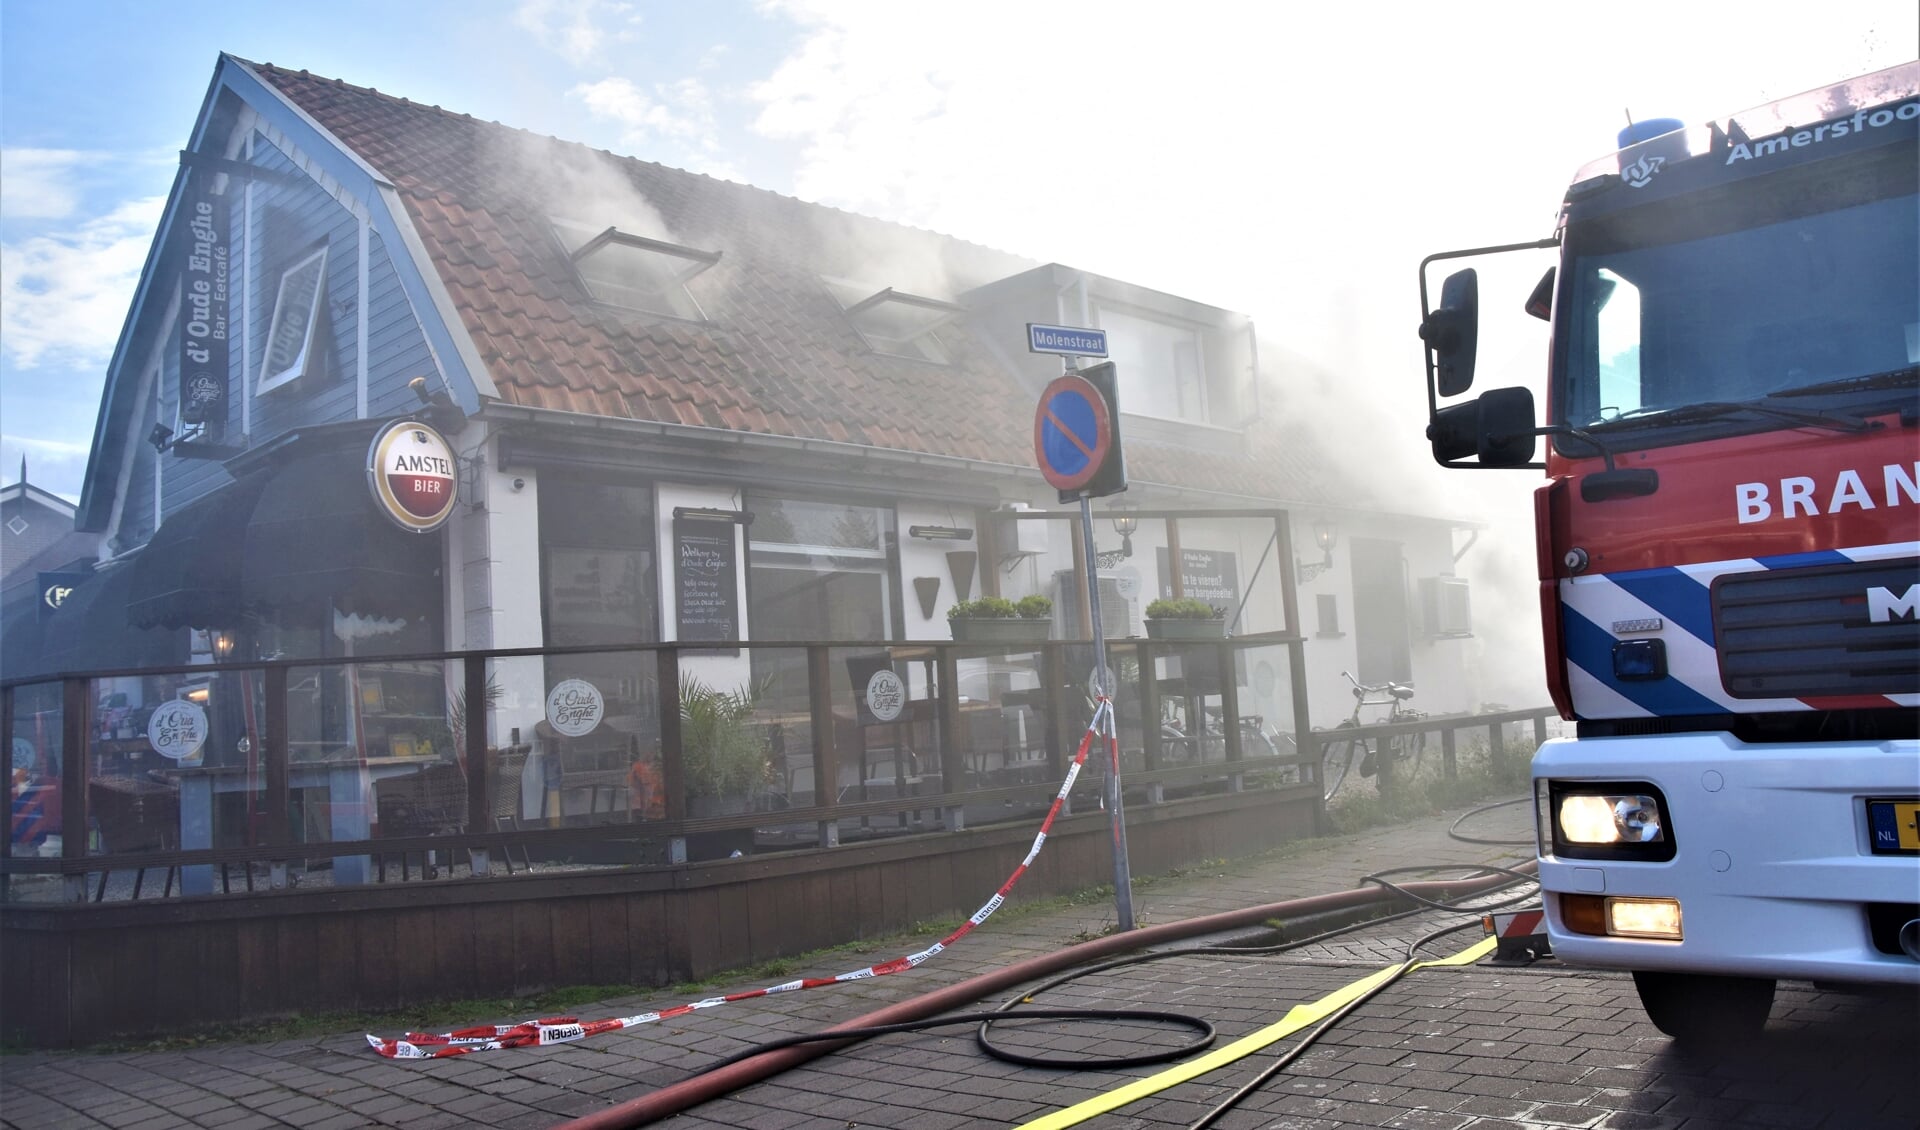 Brandweer Soest kreeg bij de brandbestrijding in d'Oude Enghe assistentie van zes andere korpsen.